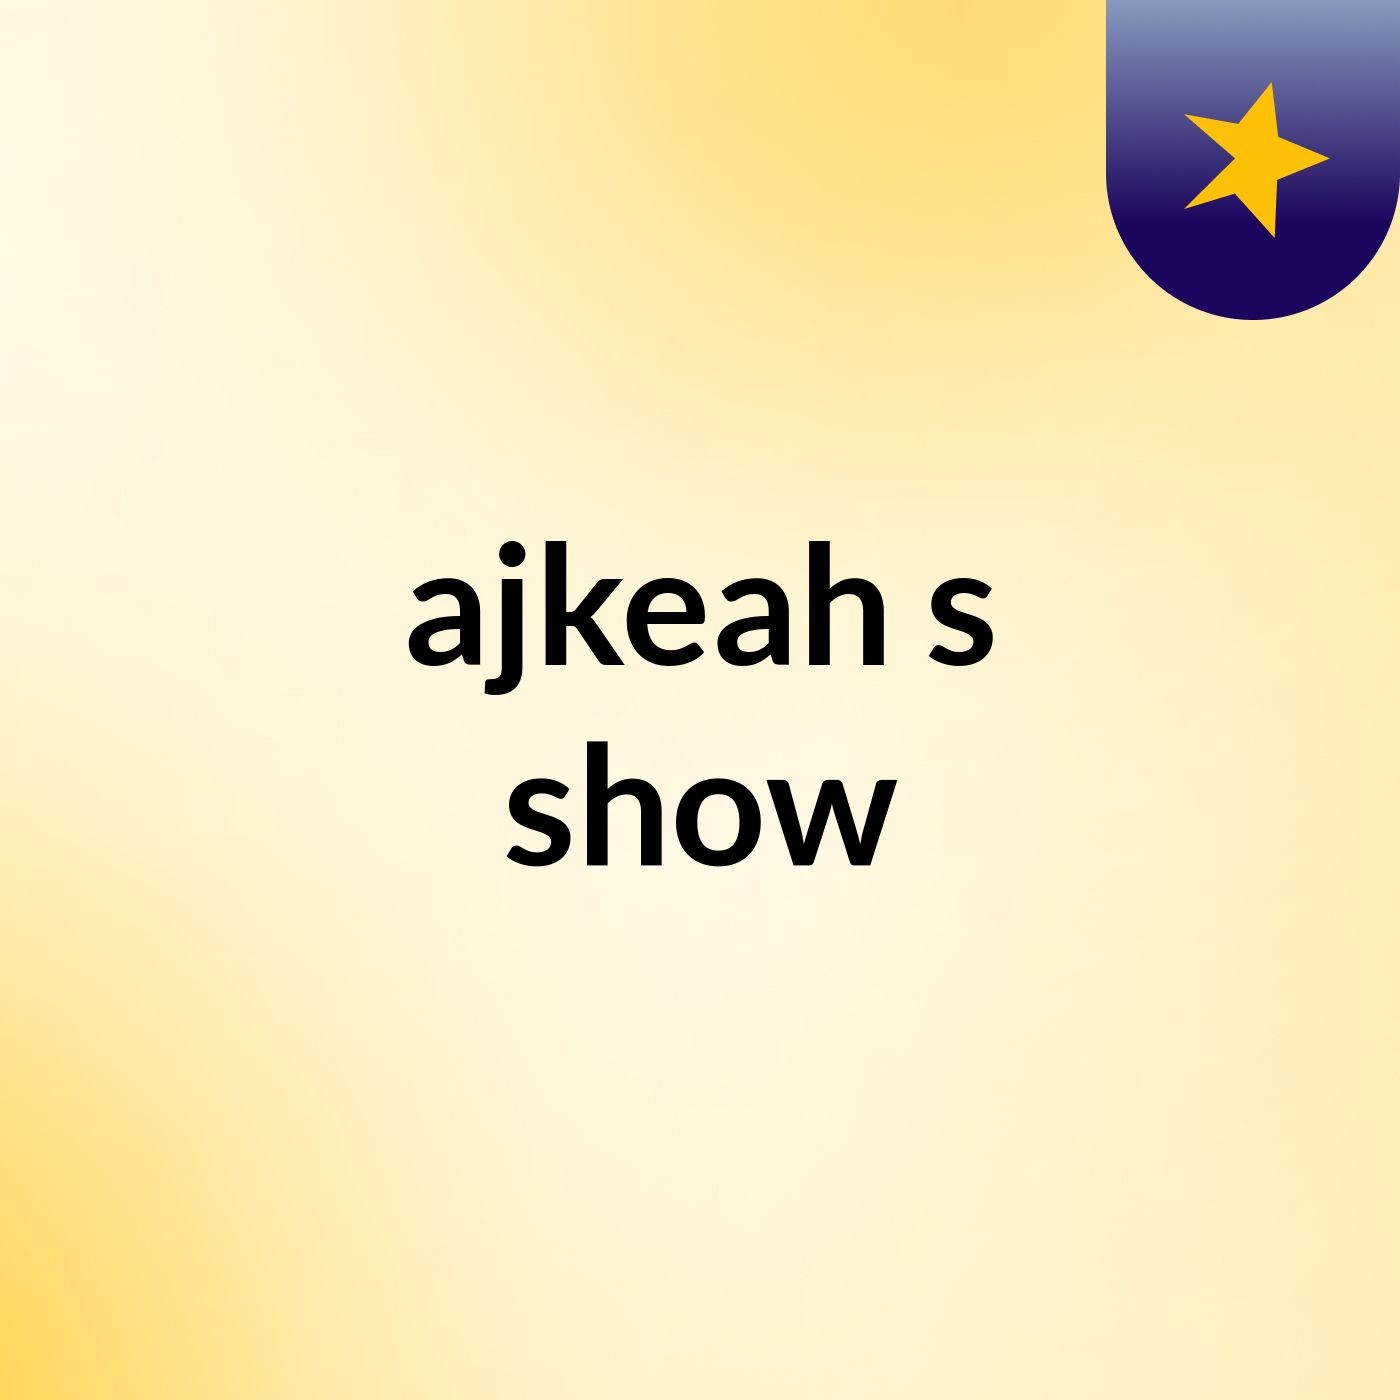 ajkeah's show